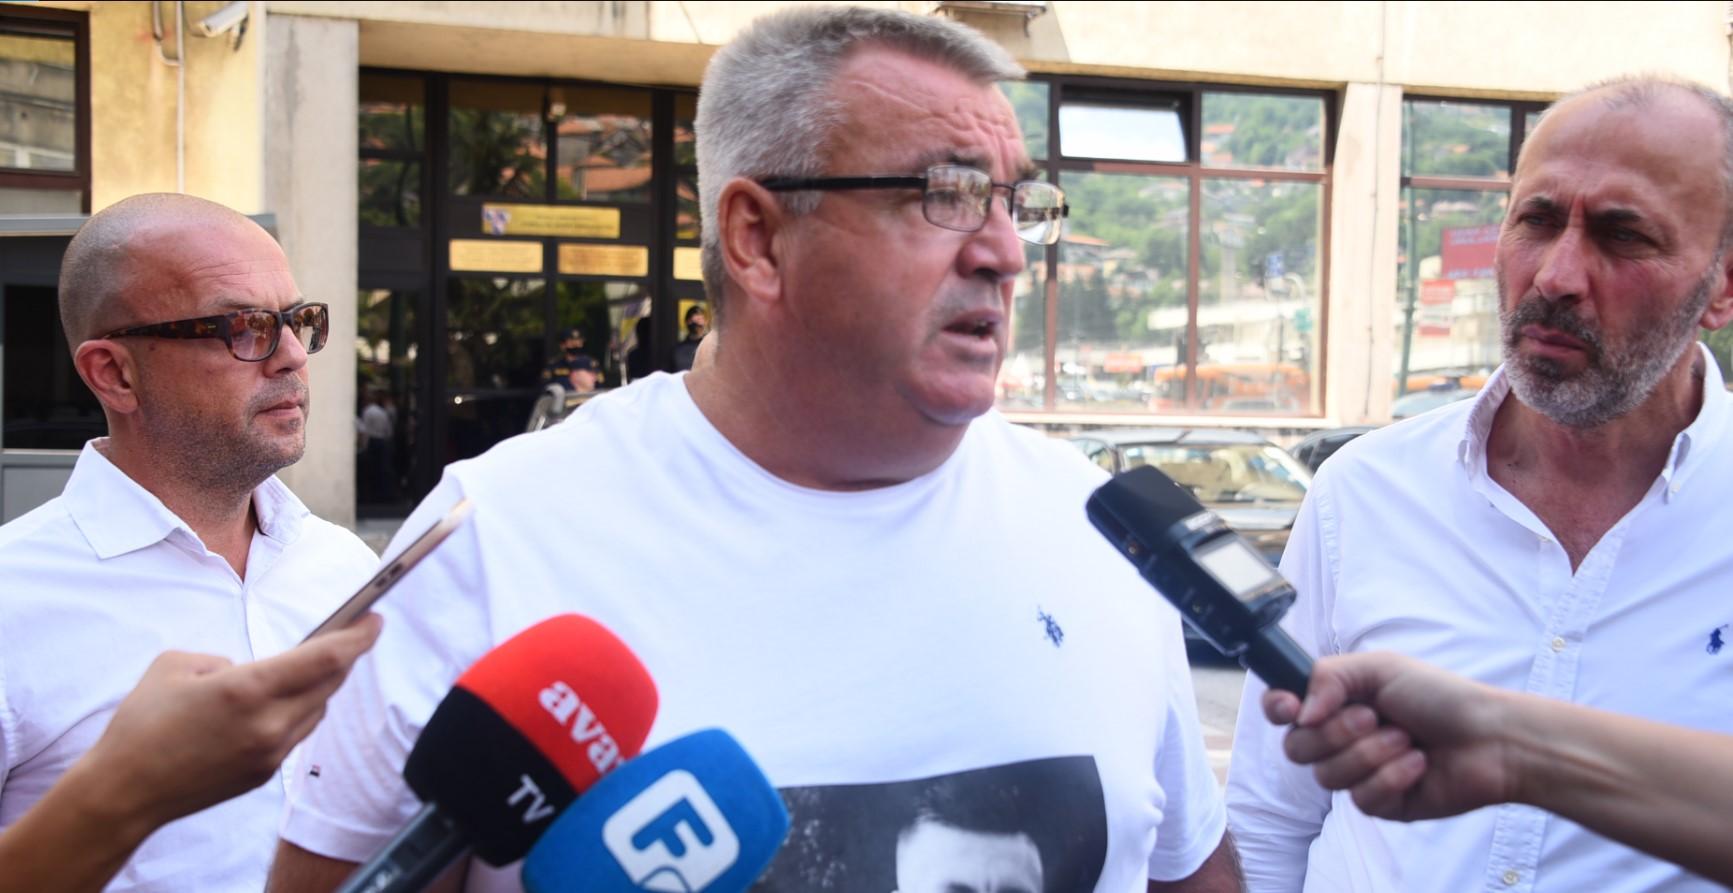 Muriz Memić: Očekujem oslobađajuću presudu jer svi znamo da se nije desila saobraćajna nesreća